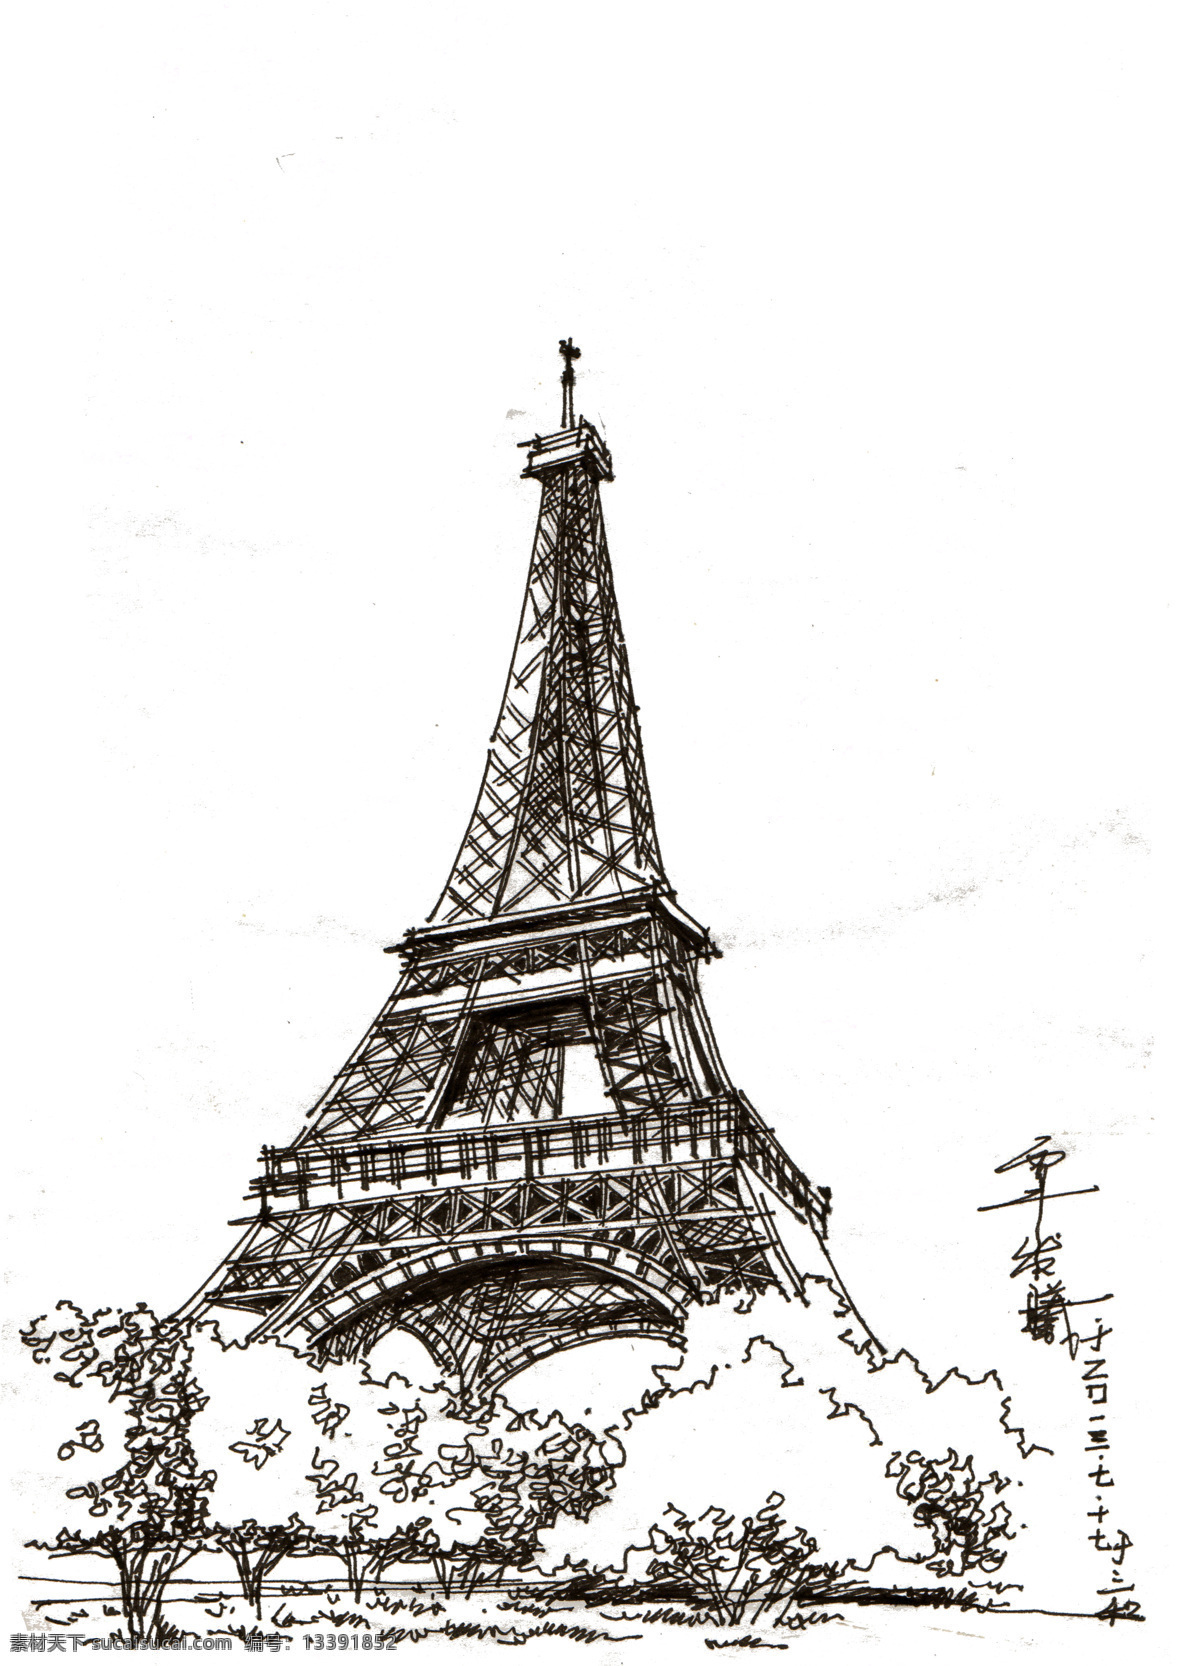 手绘 埃菲尔铁塔 手绘建筑 手绘铁塔 艾菲铁塔 建筑手绘 景观手绘 建筑设计 环境设计